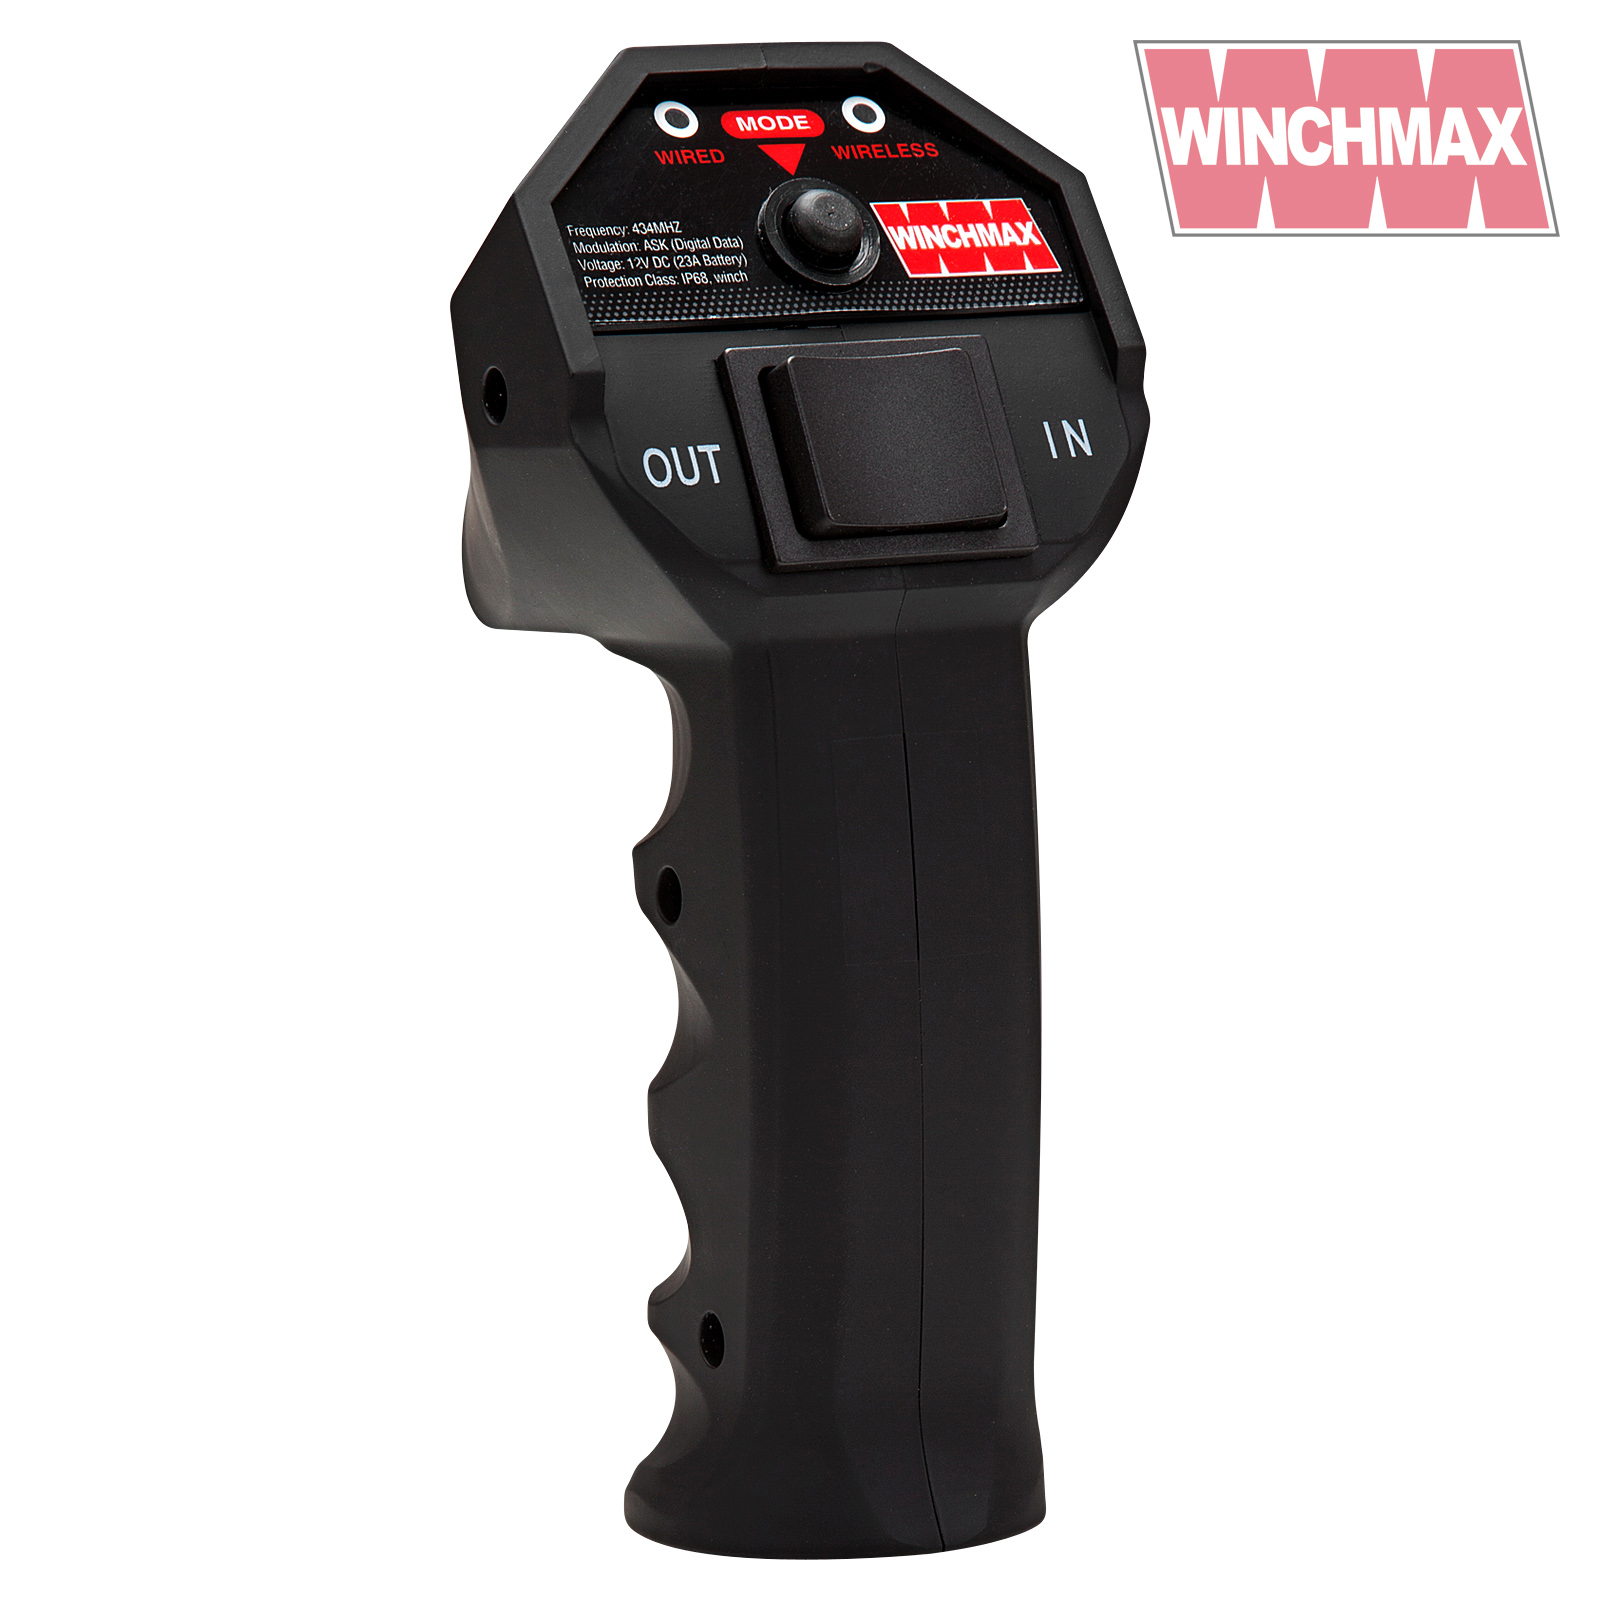 Winchmax Single SL remote control 24v